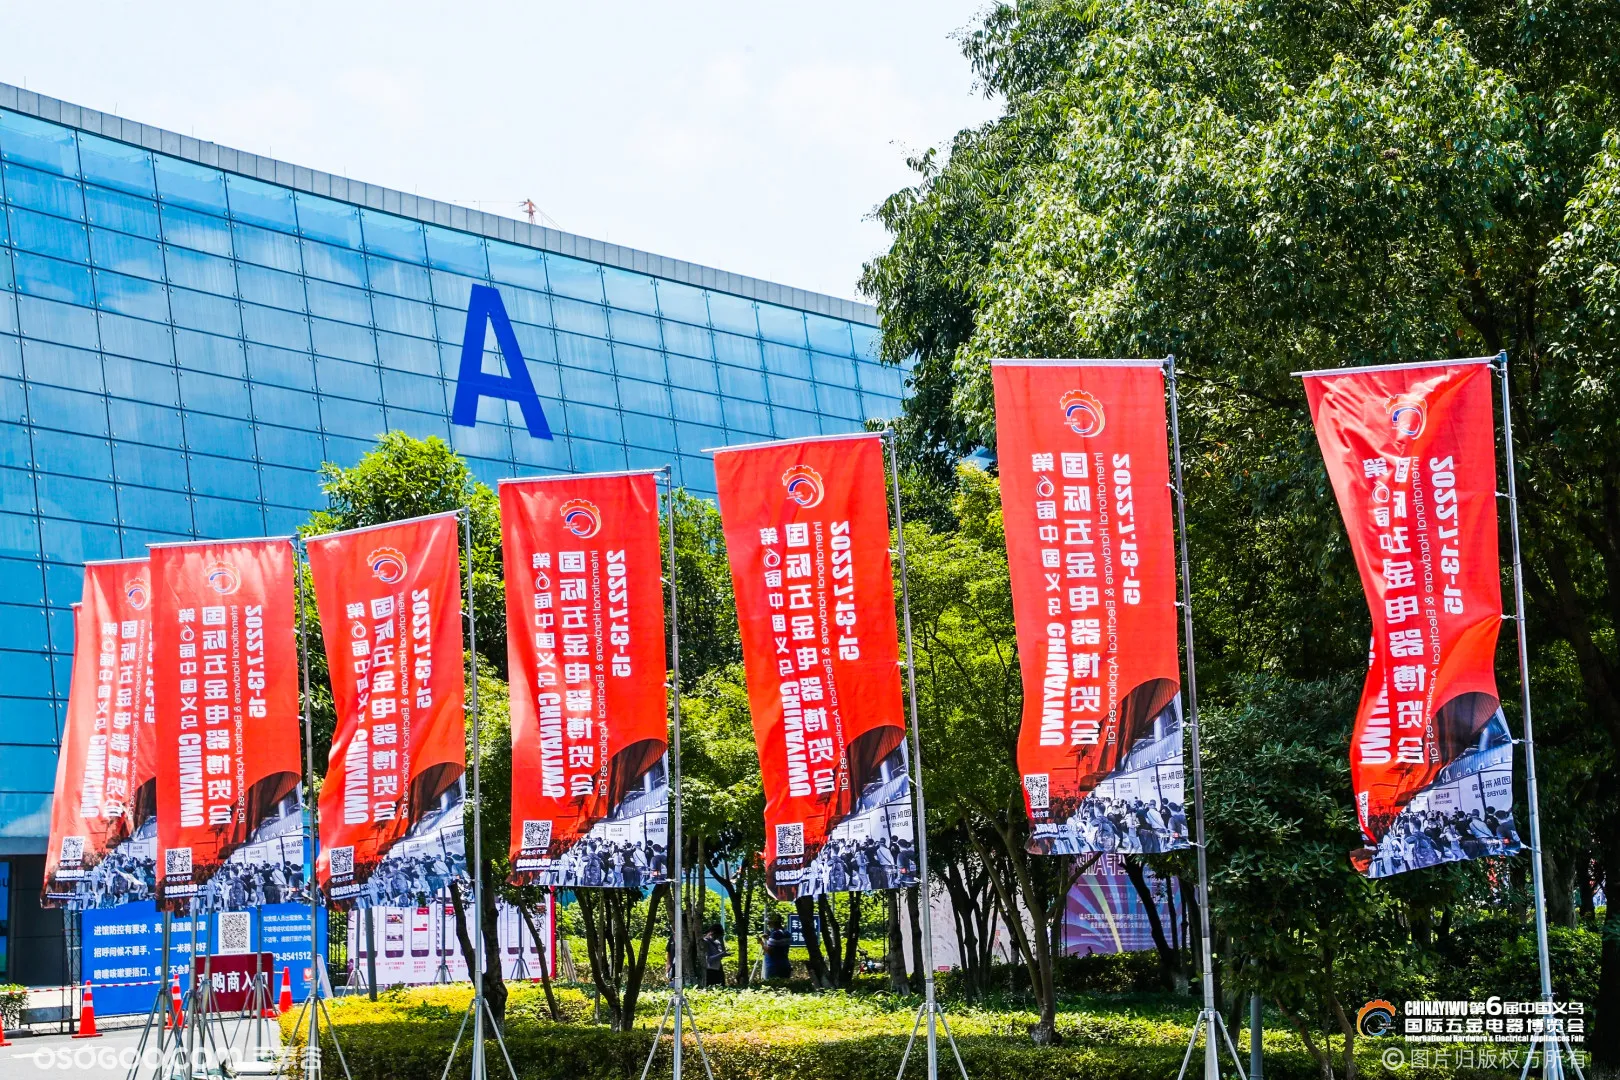 第6届中国义乌国际五金电器博览会